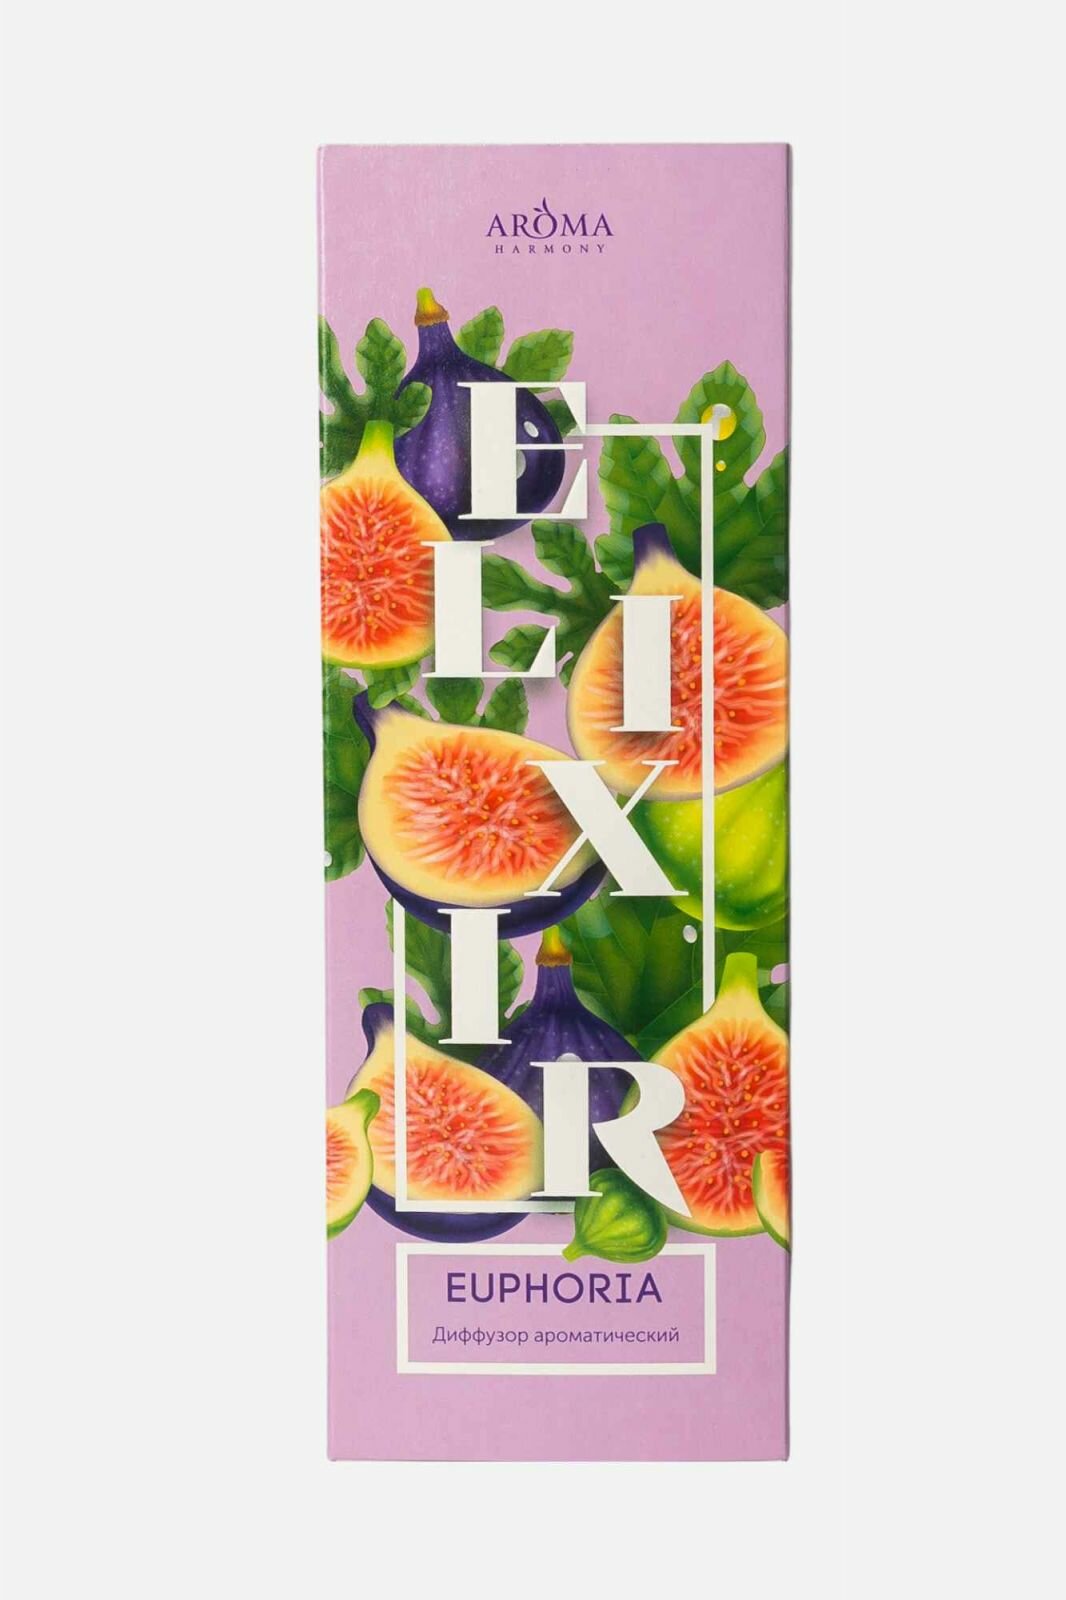 Аромадиффузор Aroma Harmony "Elixir", Euphoria, 50 мл